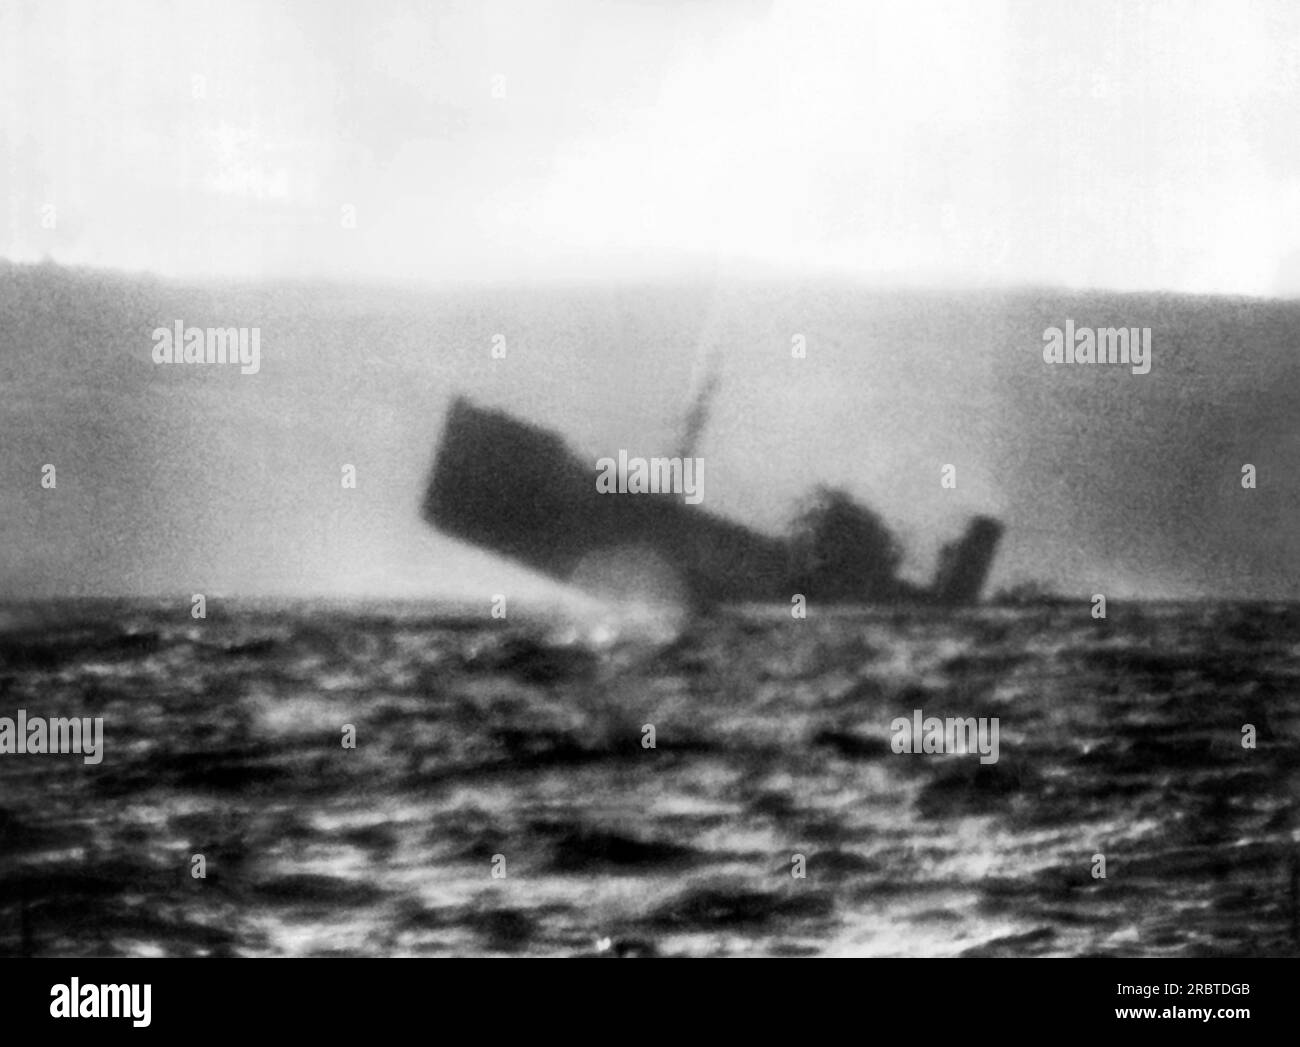 Giappone, 23 settembre 1942 Una fotografia del periscopio di un cargo giapponese che si stava infilando sotto il suo corpo dopo essere stato silurato da un sottomarino della flotta del Pacifico statunitense nelle acque nazionali giapponesi. Foto Stock